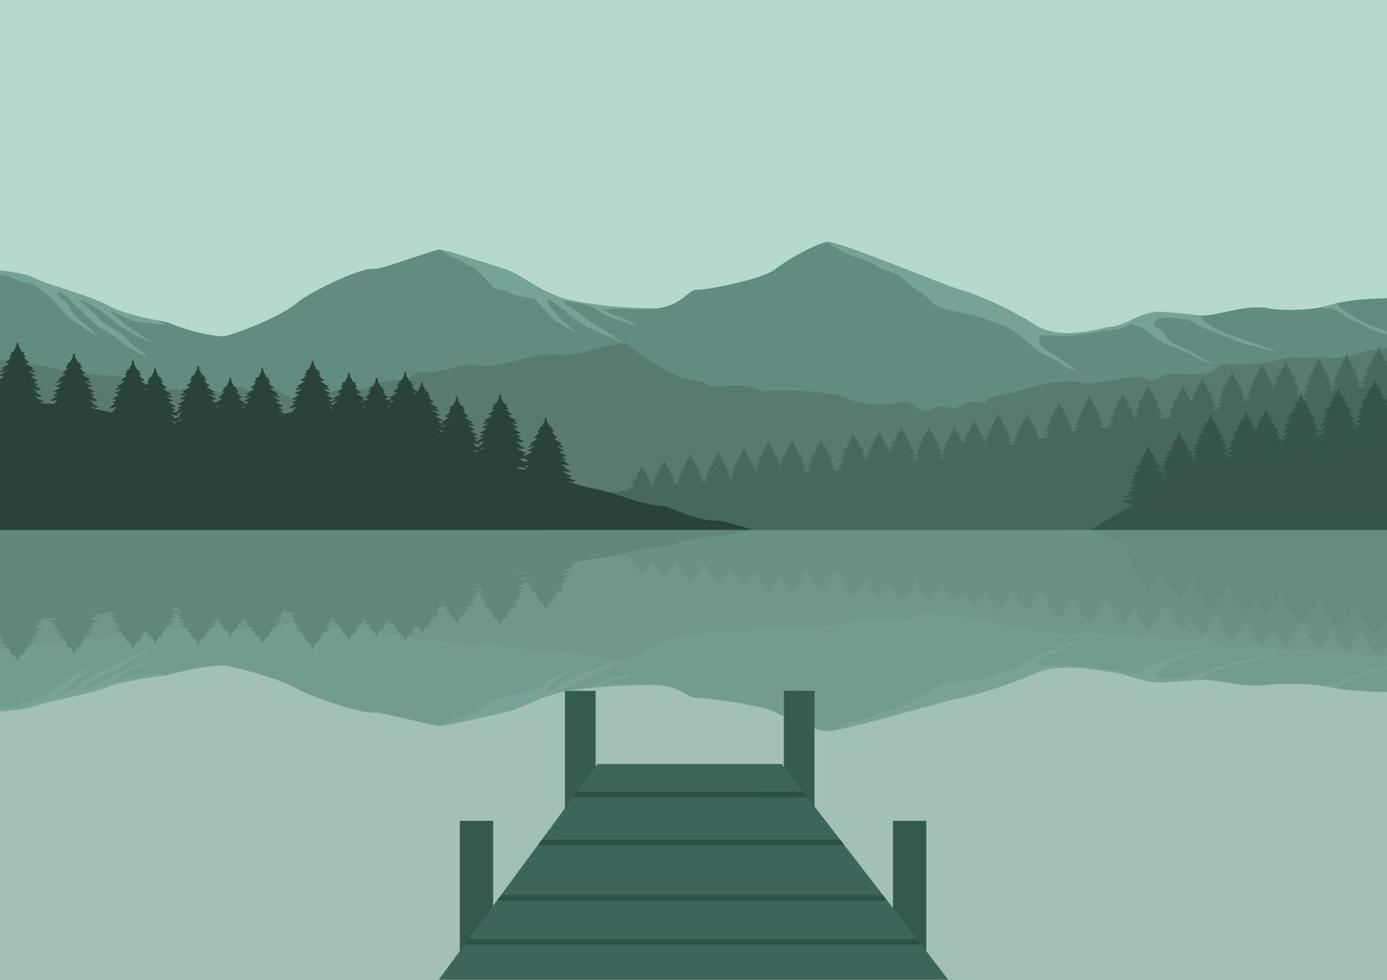 paesaggio con lago, montagne e di legno molo. vettore illustrazione.